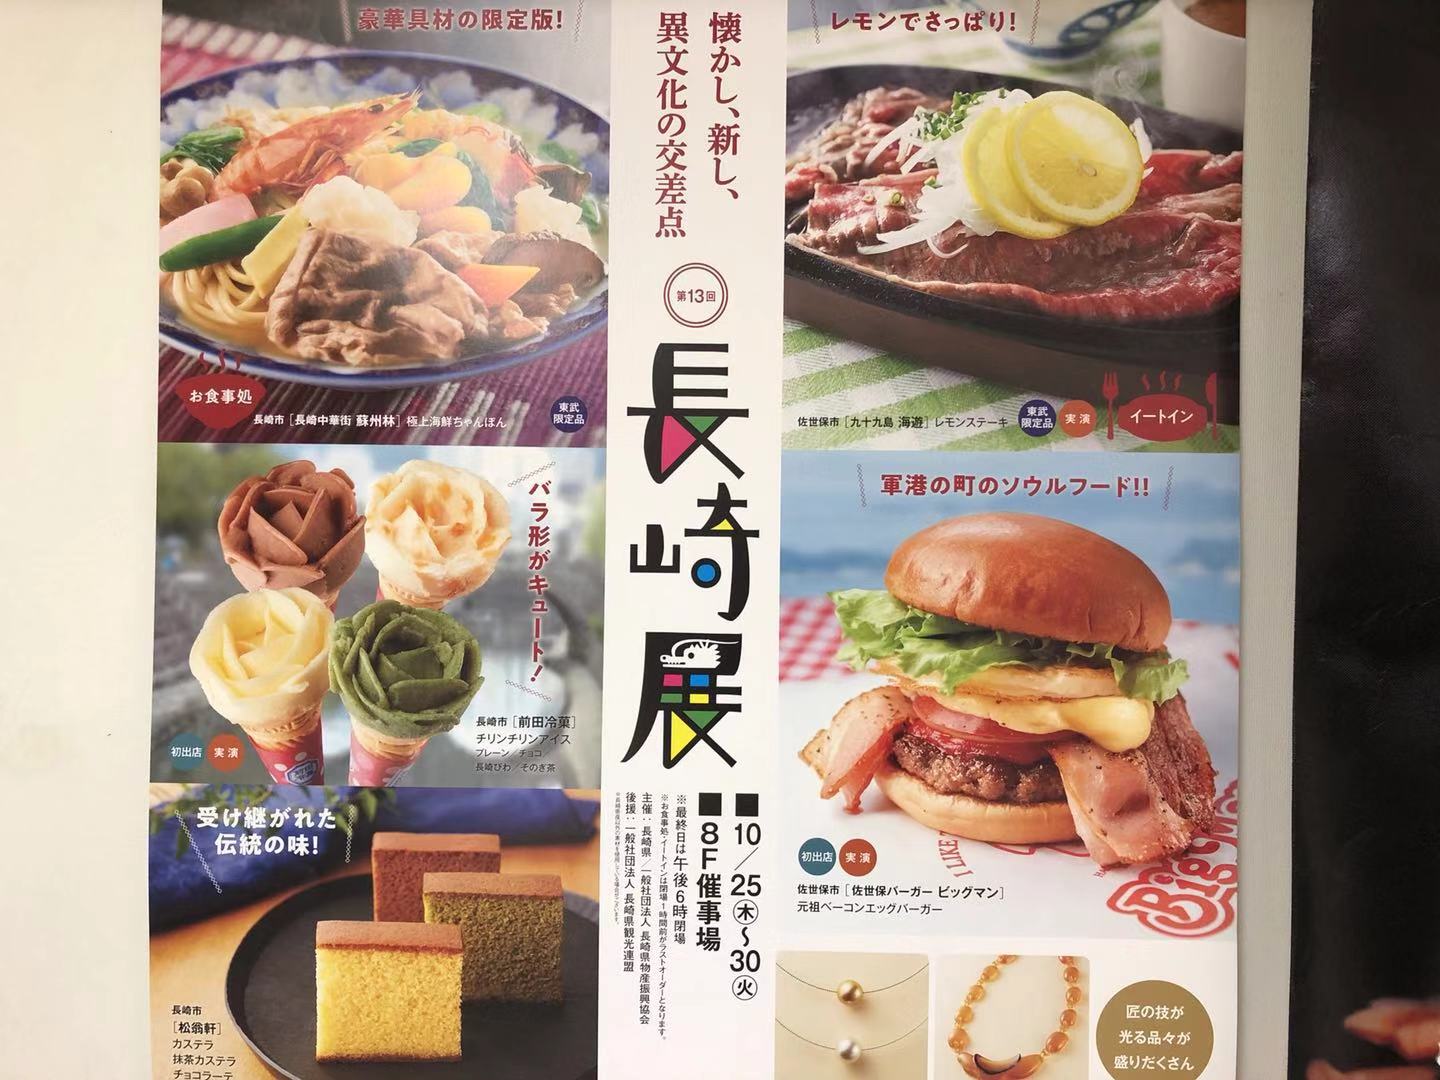 東武百貨店池袋店で長崎展開催 佐世保バーガーの出店も 雑記ブログ